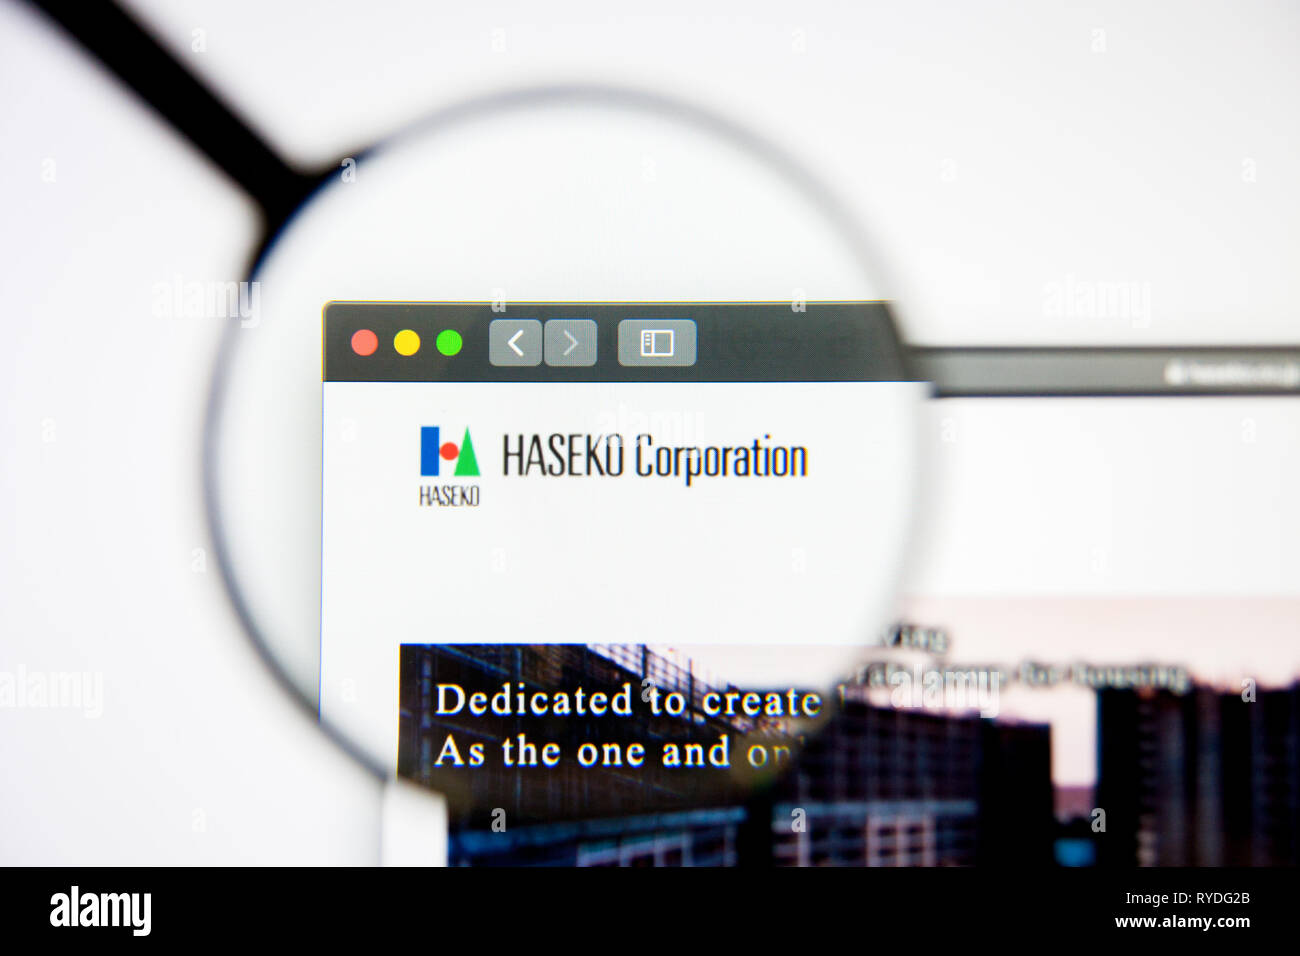 Los Angeles, California, Estados Unidos - 5 de marzo de 2019: Haseko Página de inicio de nuestro sitio web. Logotipo Haseko visibles en pantalla, Editorial ilustrativos Foto de stock